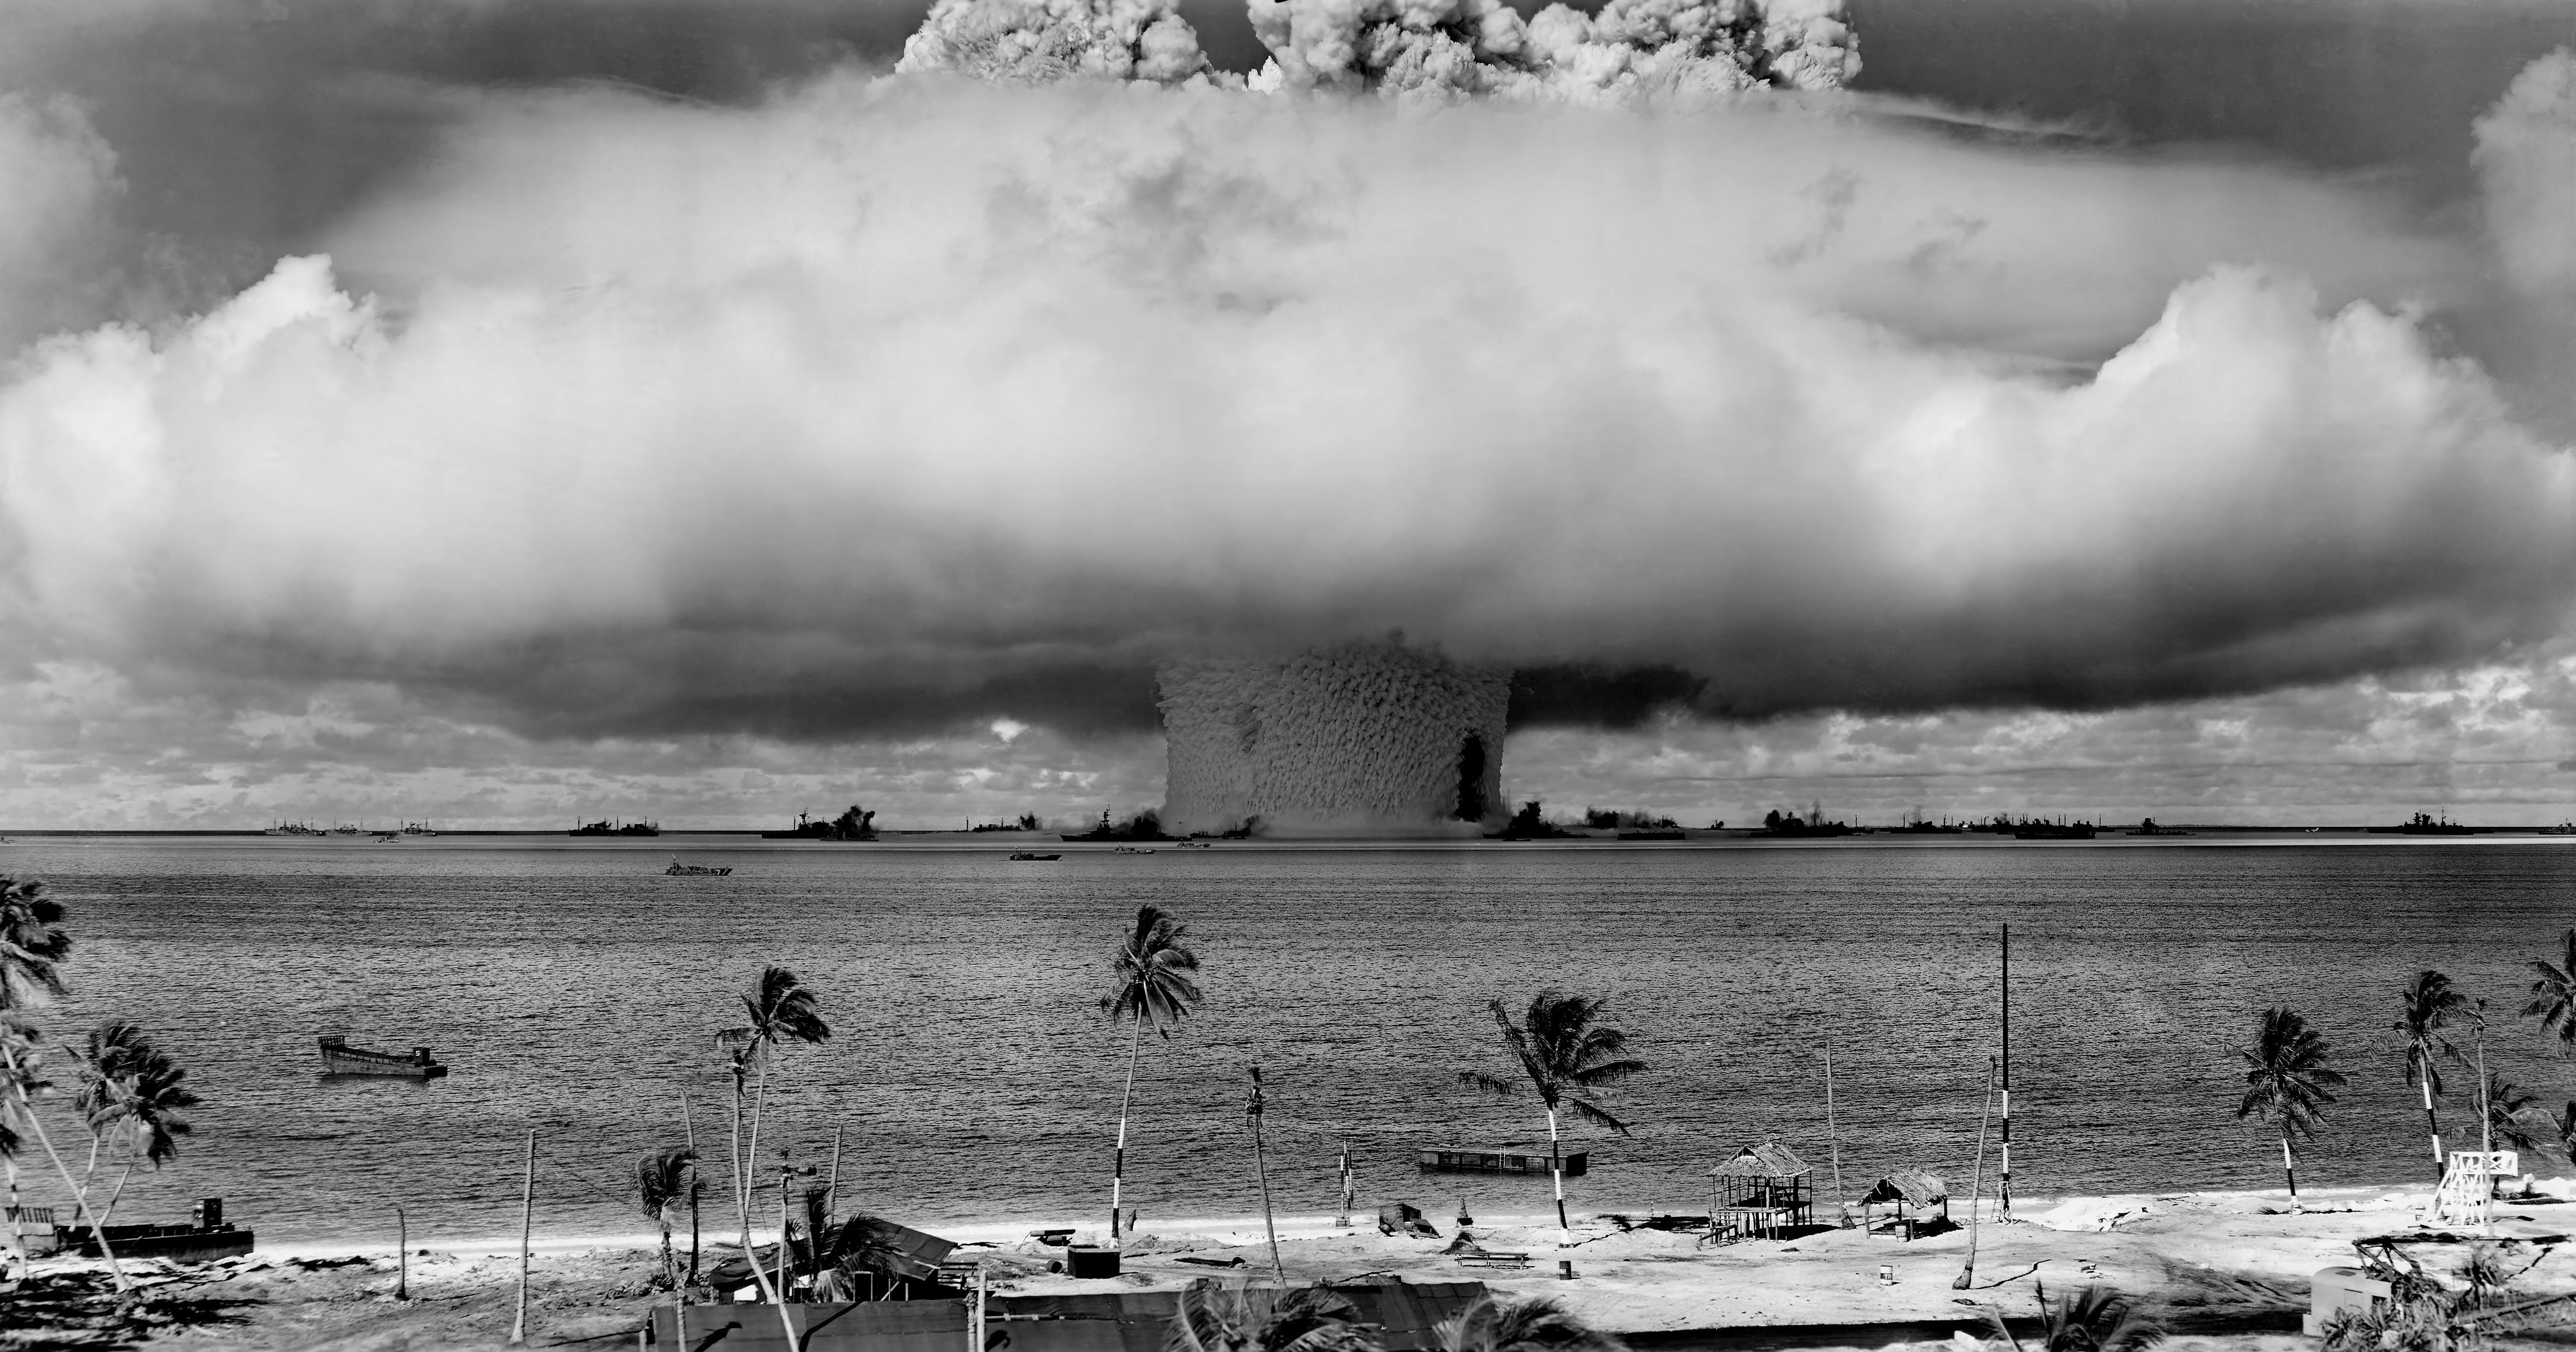 Nuclear detonation at Bikini Atoll in 1946